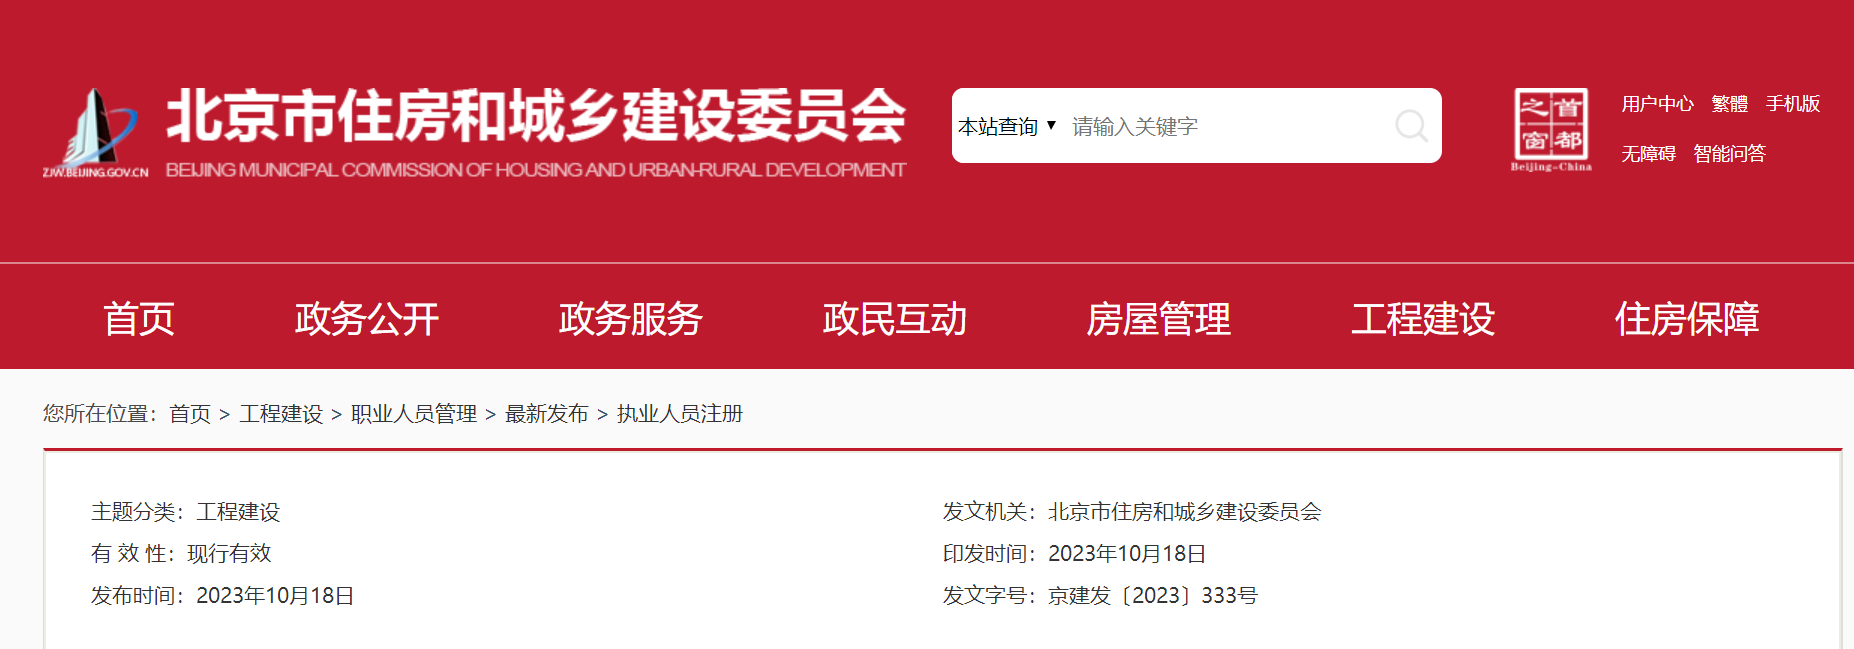 重要通知！北京自11月1日起启用新版二级建造师注册证书电子证照！